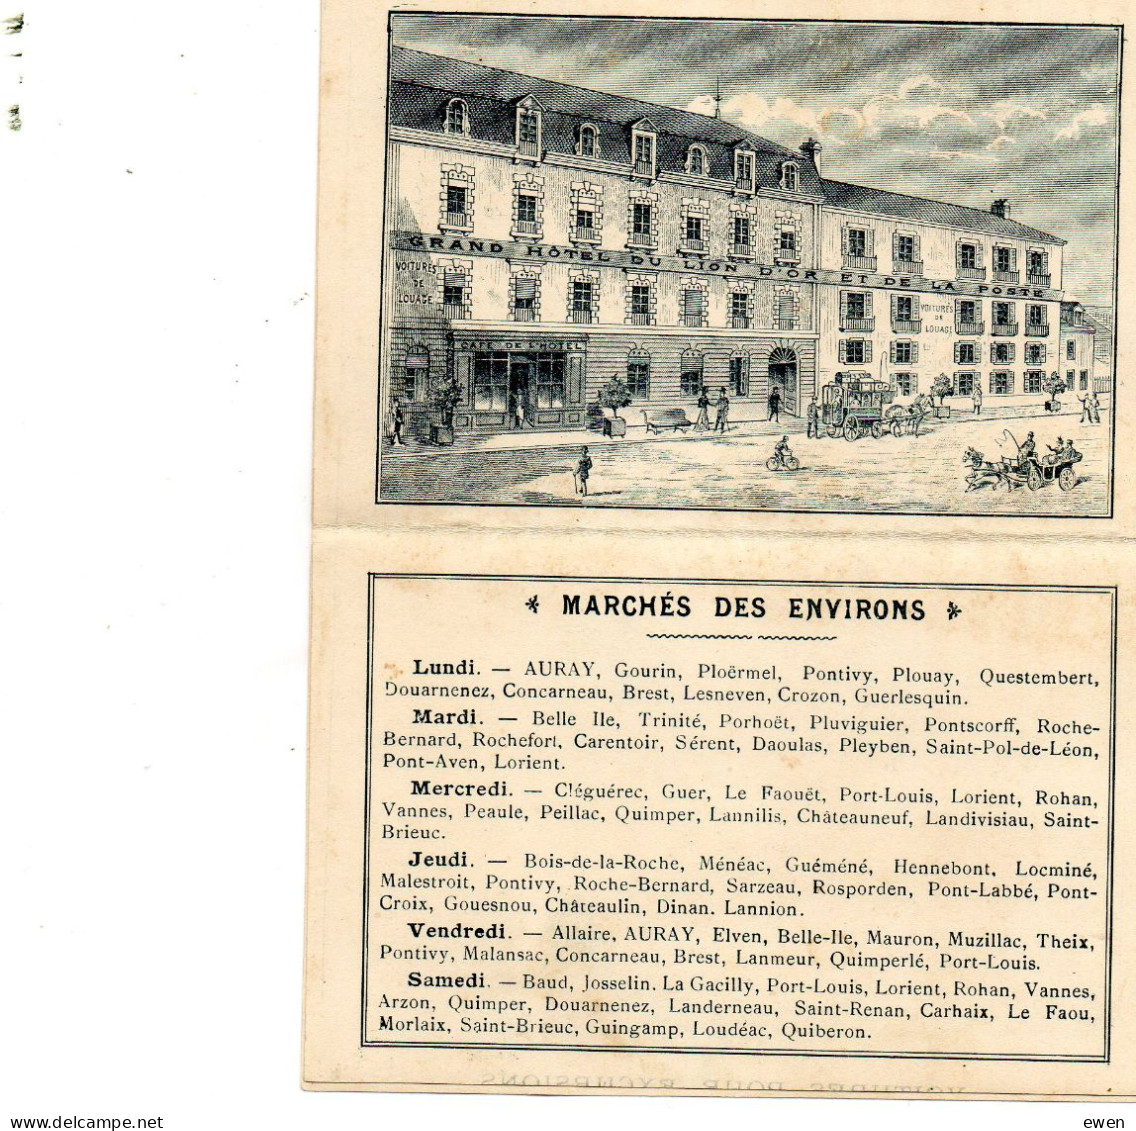 2 Dépliants Publicitaires Hôtel Du LIon D'Or à Auray, Morbihan. (Années 1920) - Reiseprospekte